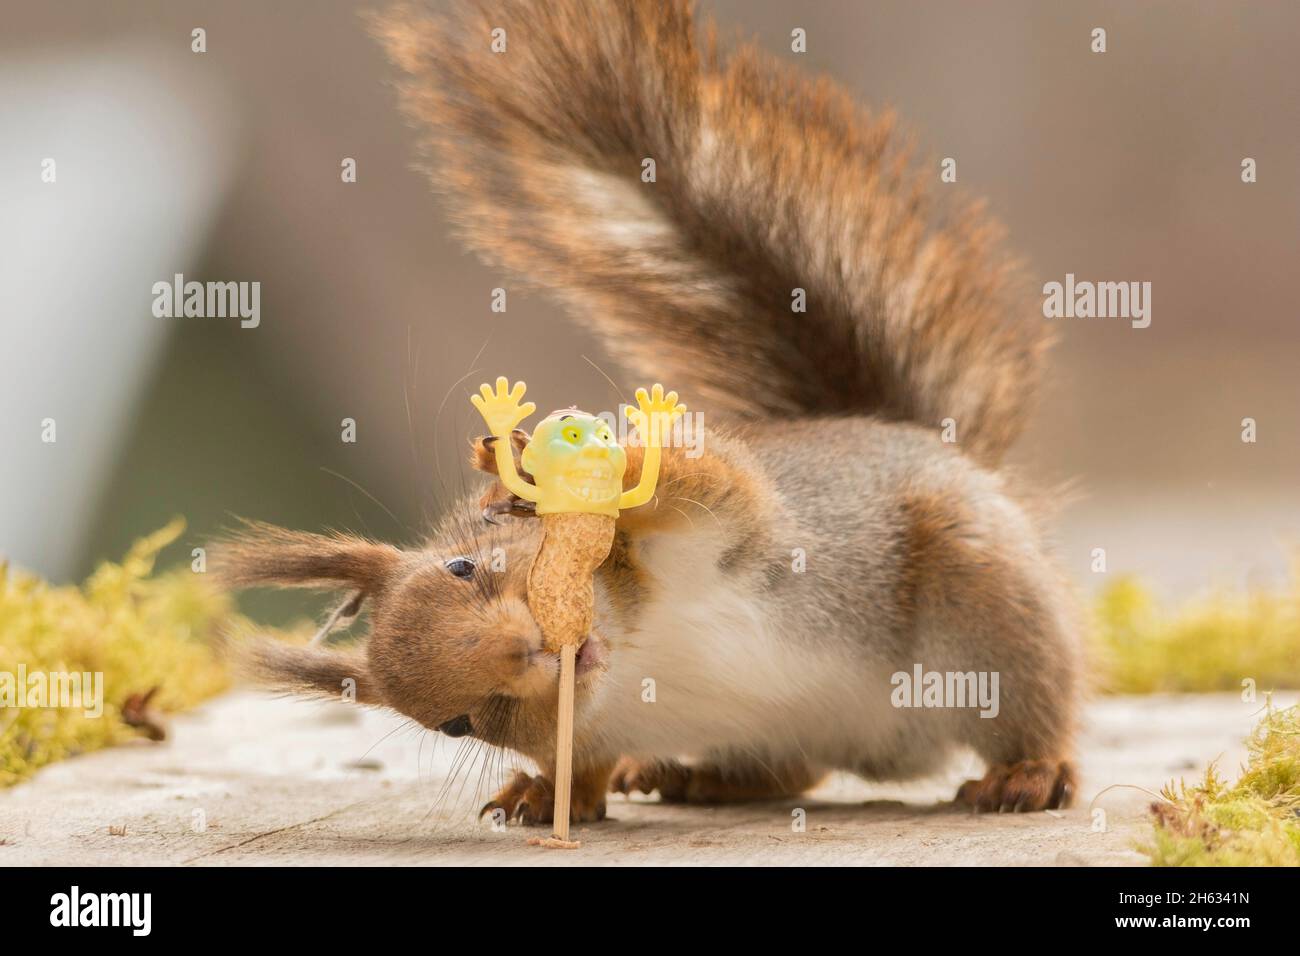 Nahaufnahme des roten Eichhörnchens, das mit einer kleinen Puppe im Mund steht, die die Hände hochhält Stockfoto